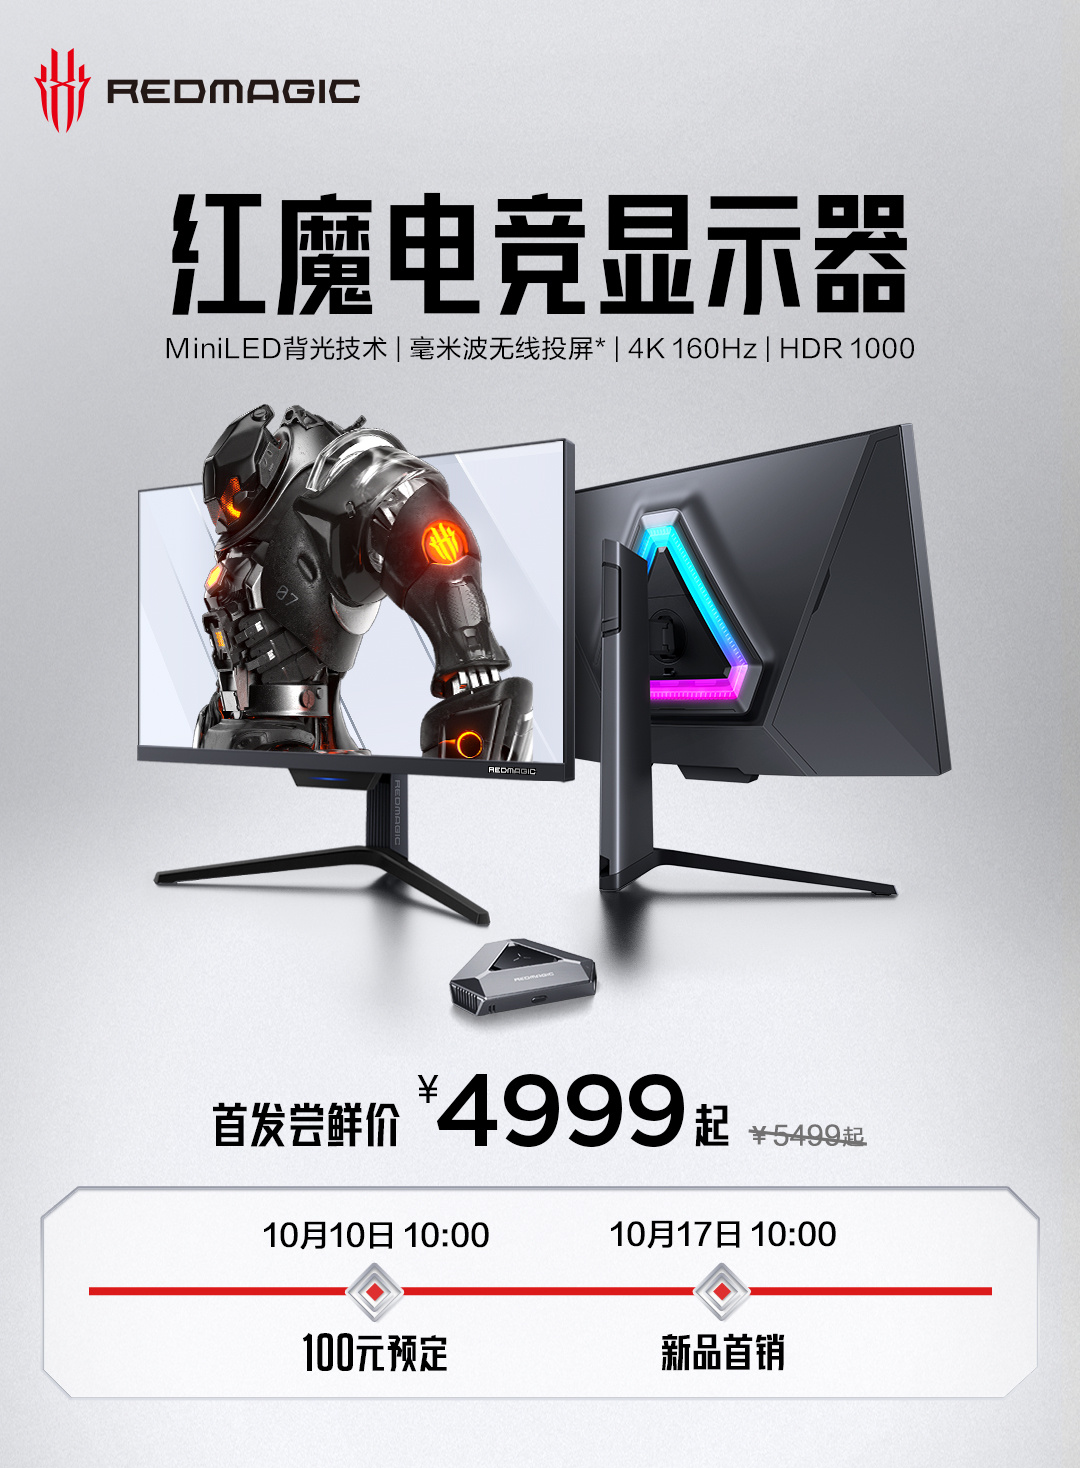 Reserva el monitor para juegos Red Magic 4K en China